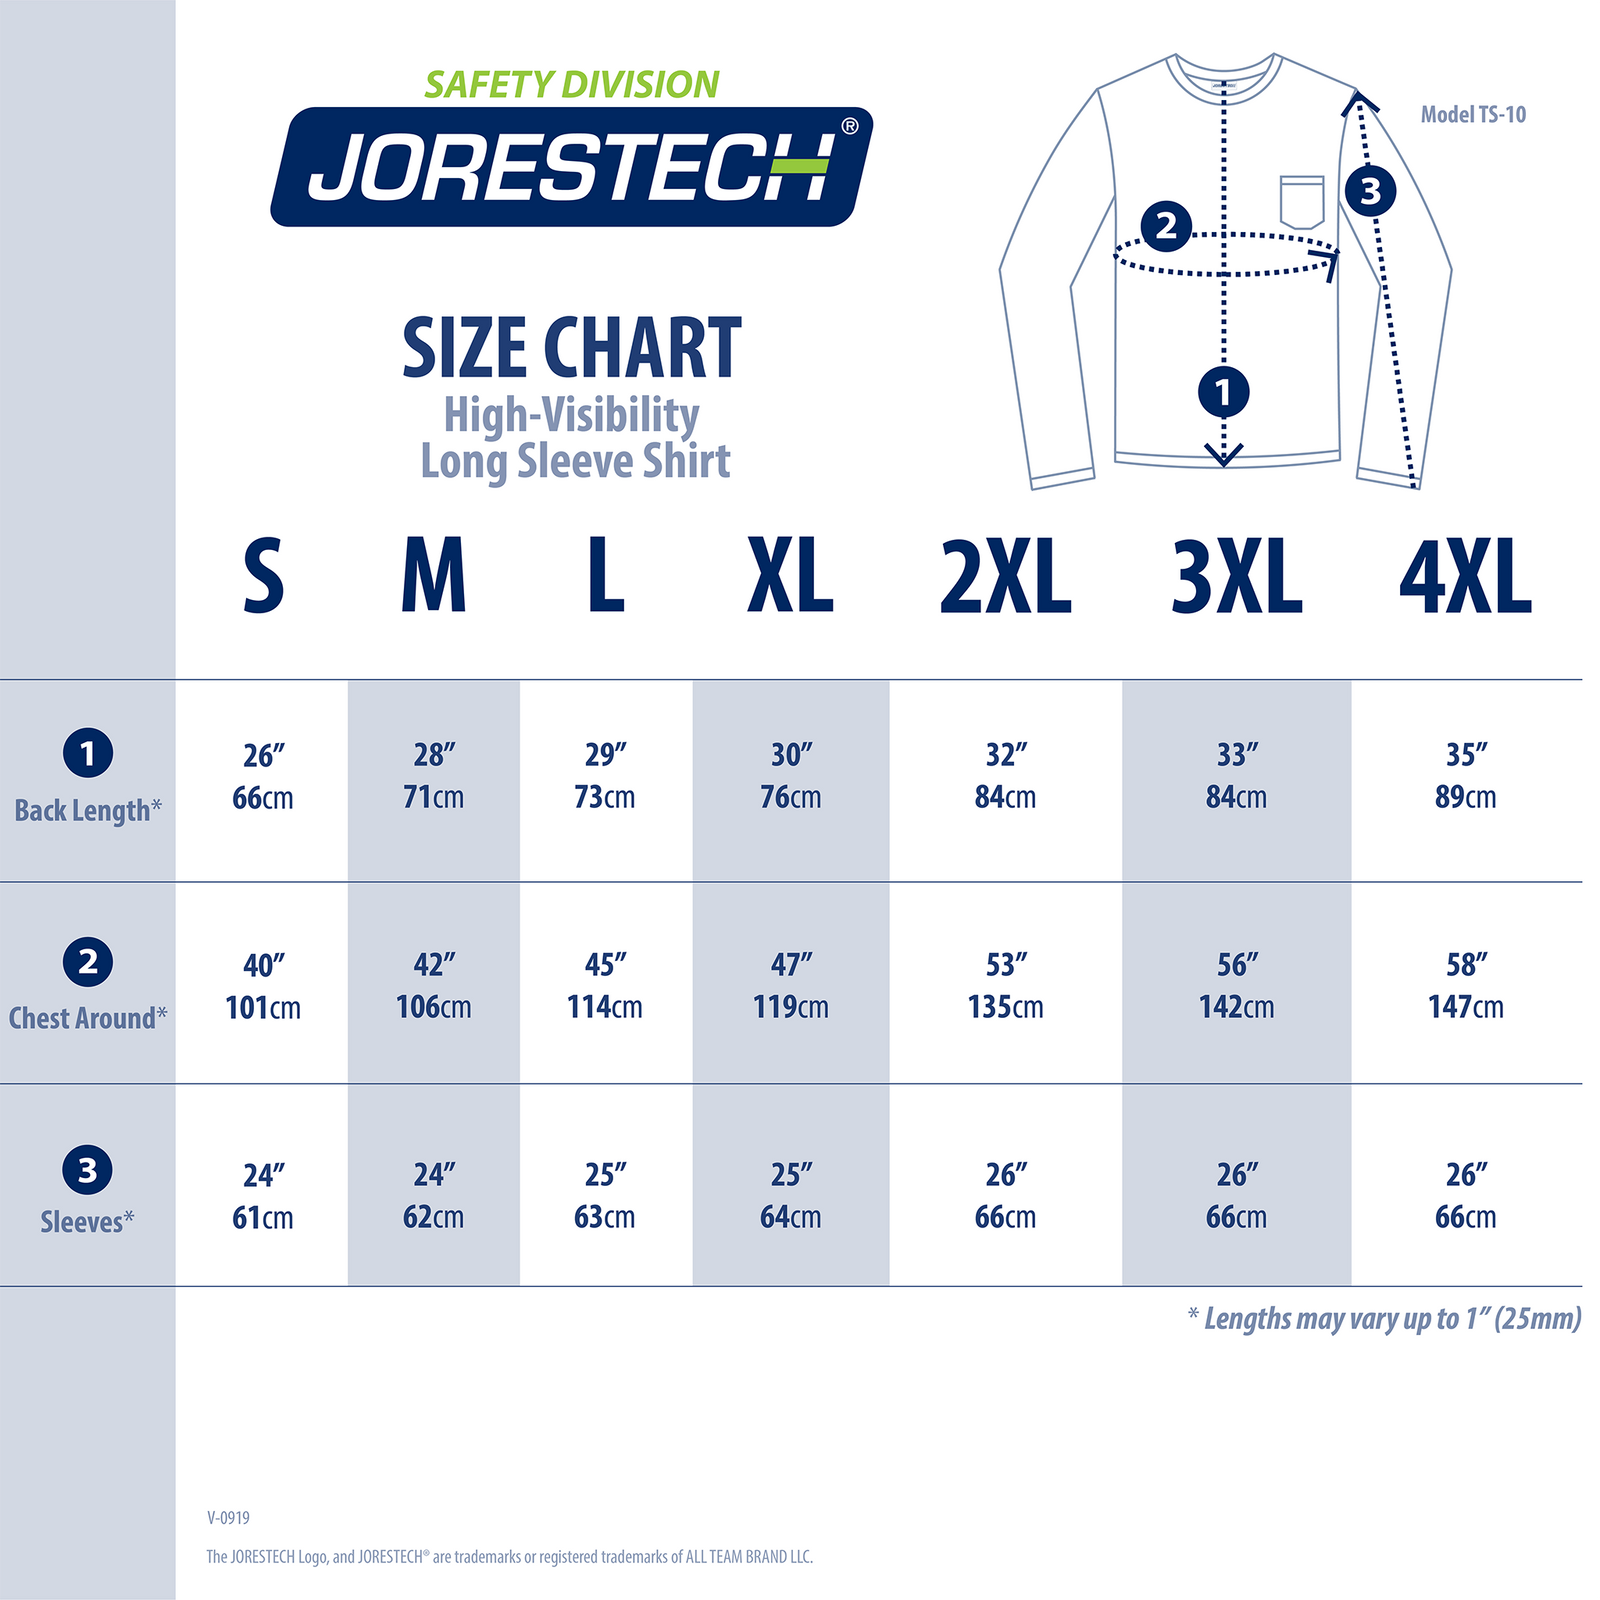 Size chart for the Hi vis long sleeve JORESTECH shirt